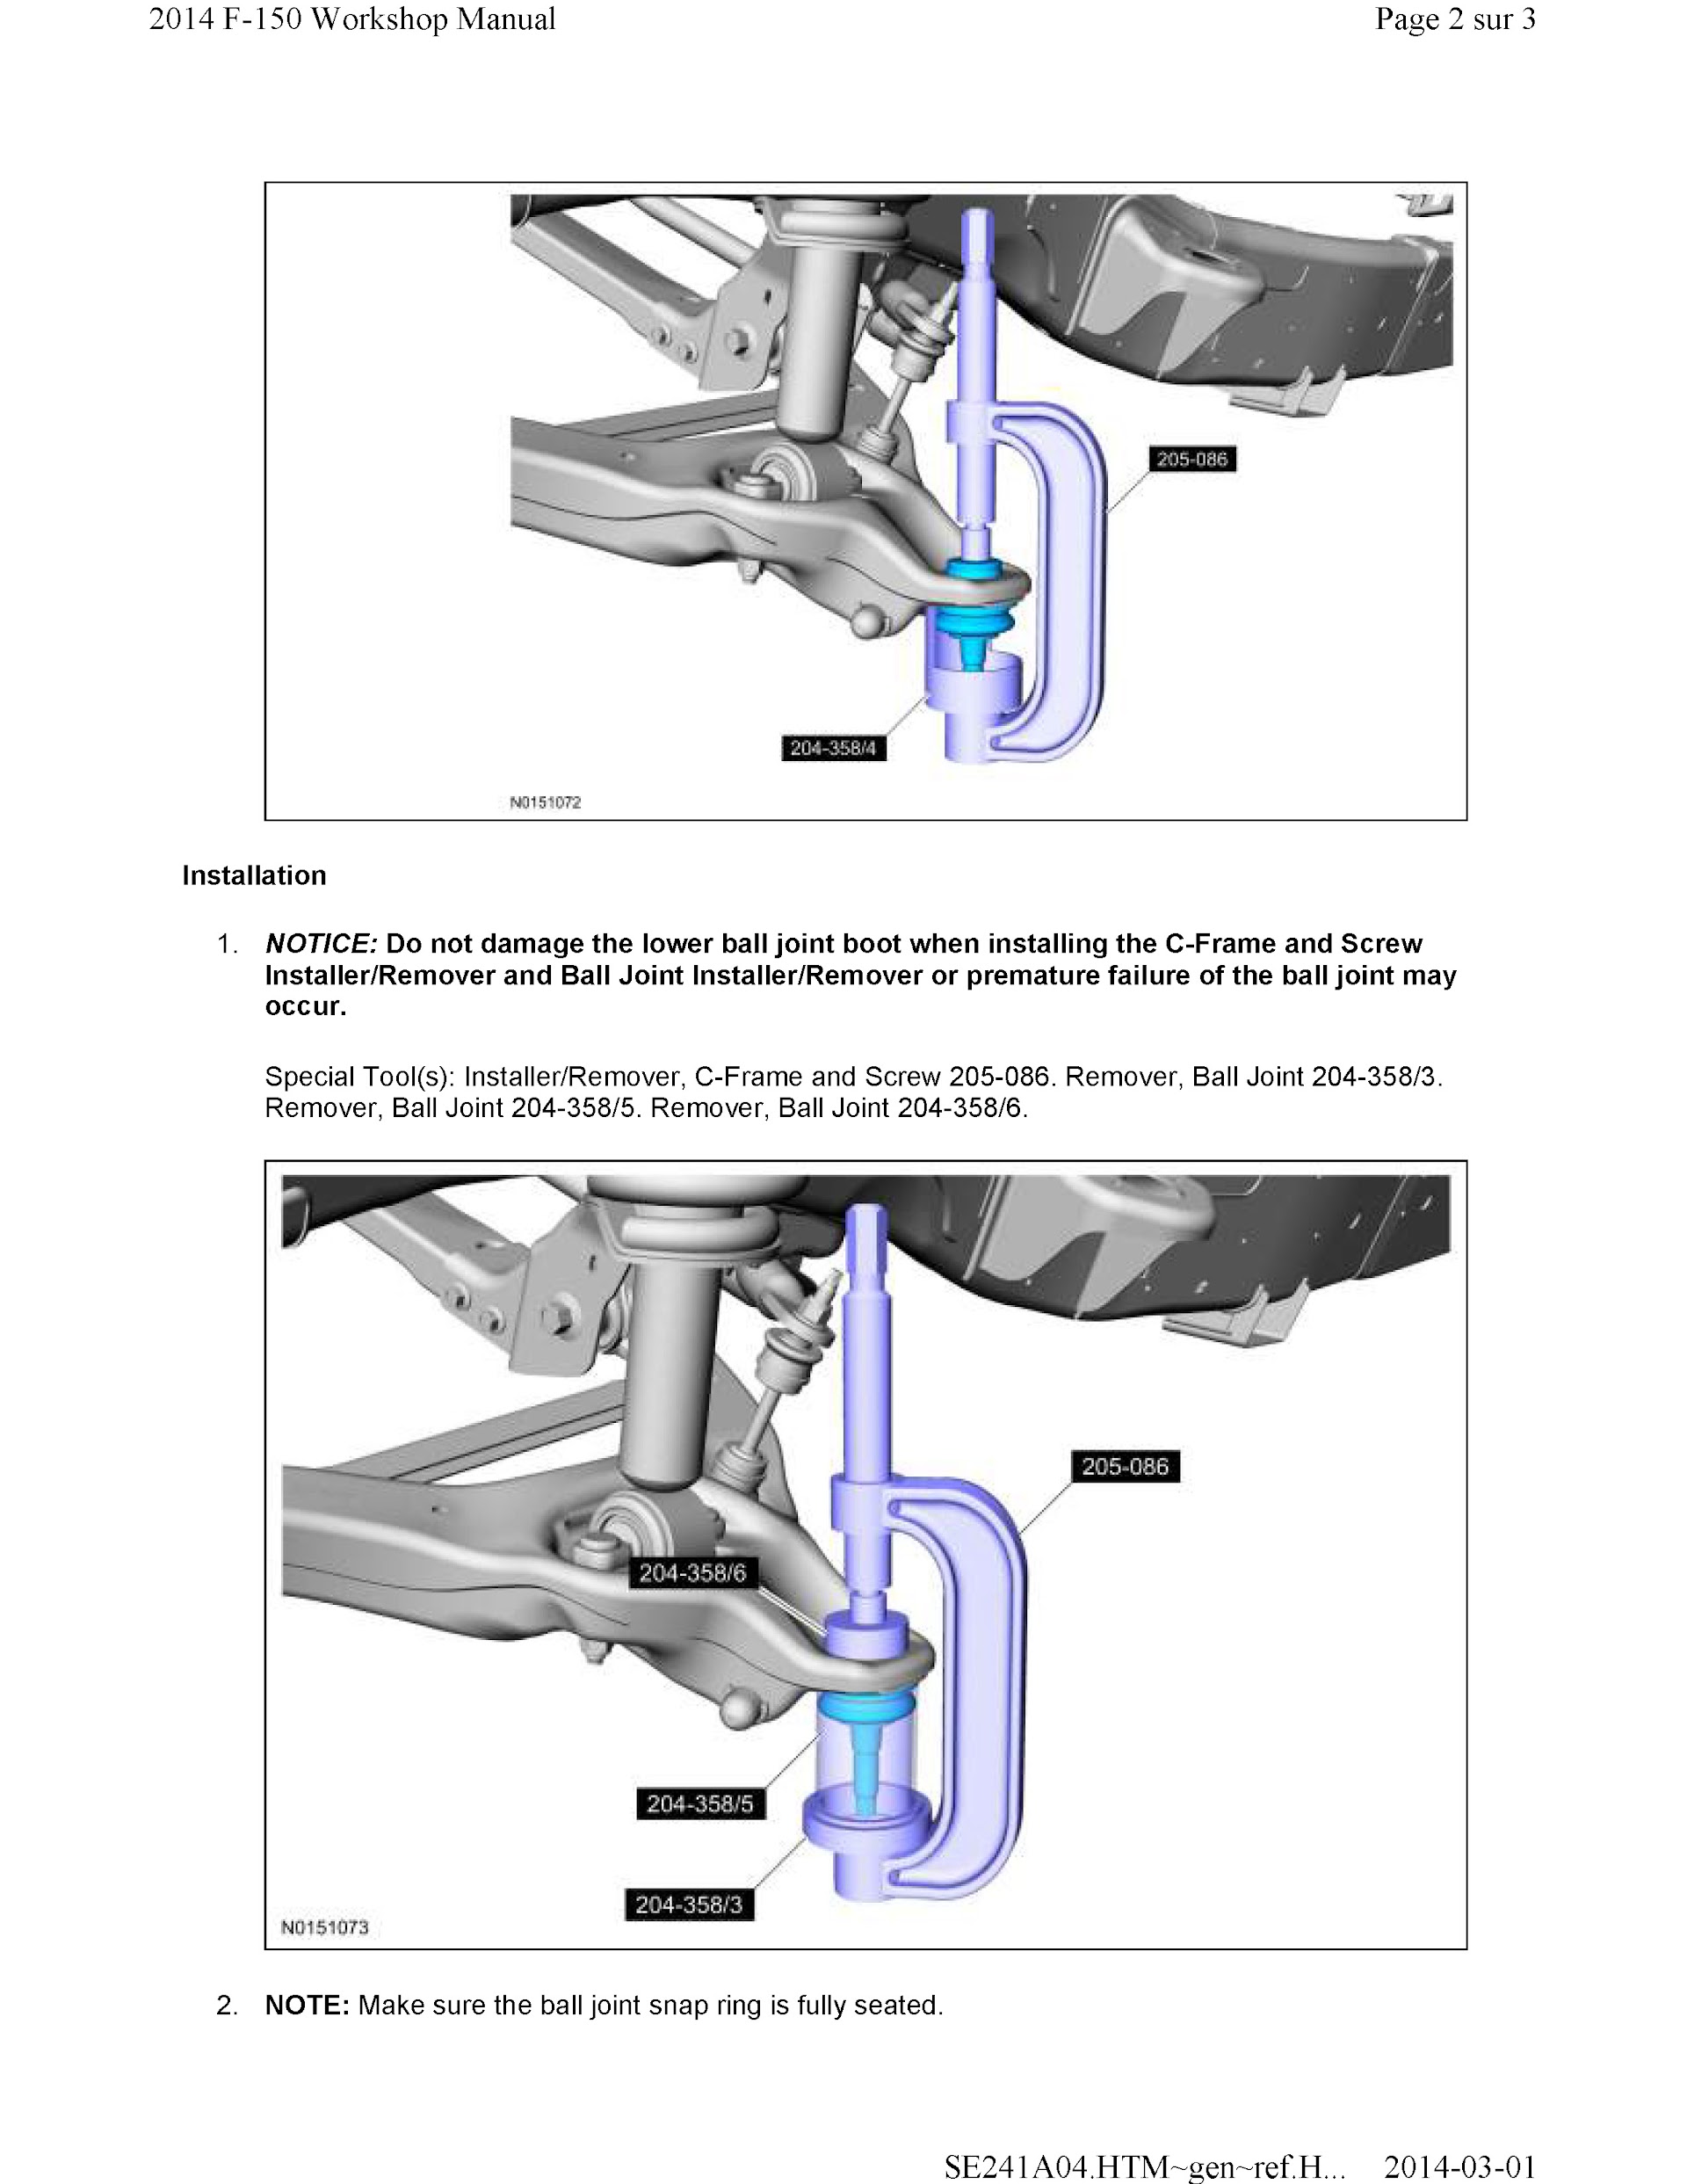 2011-2014 Ford F-150 Repair Manual